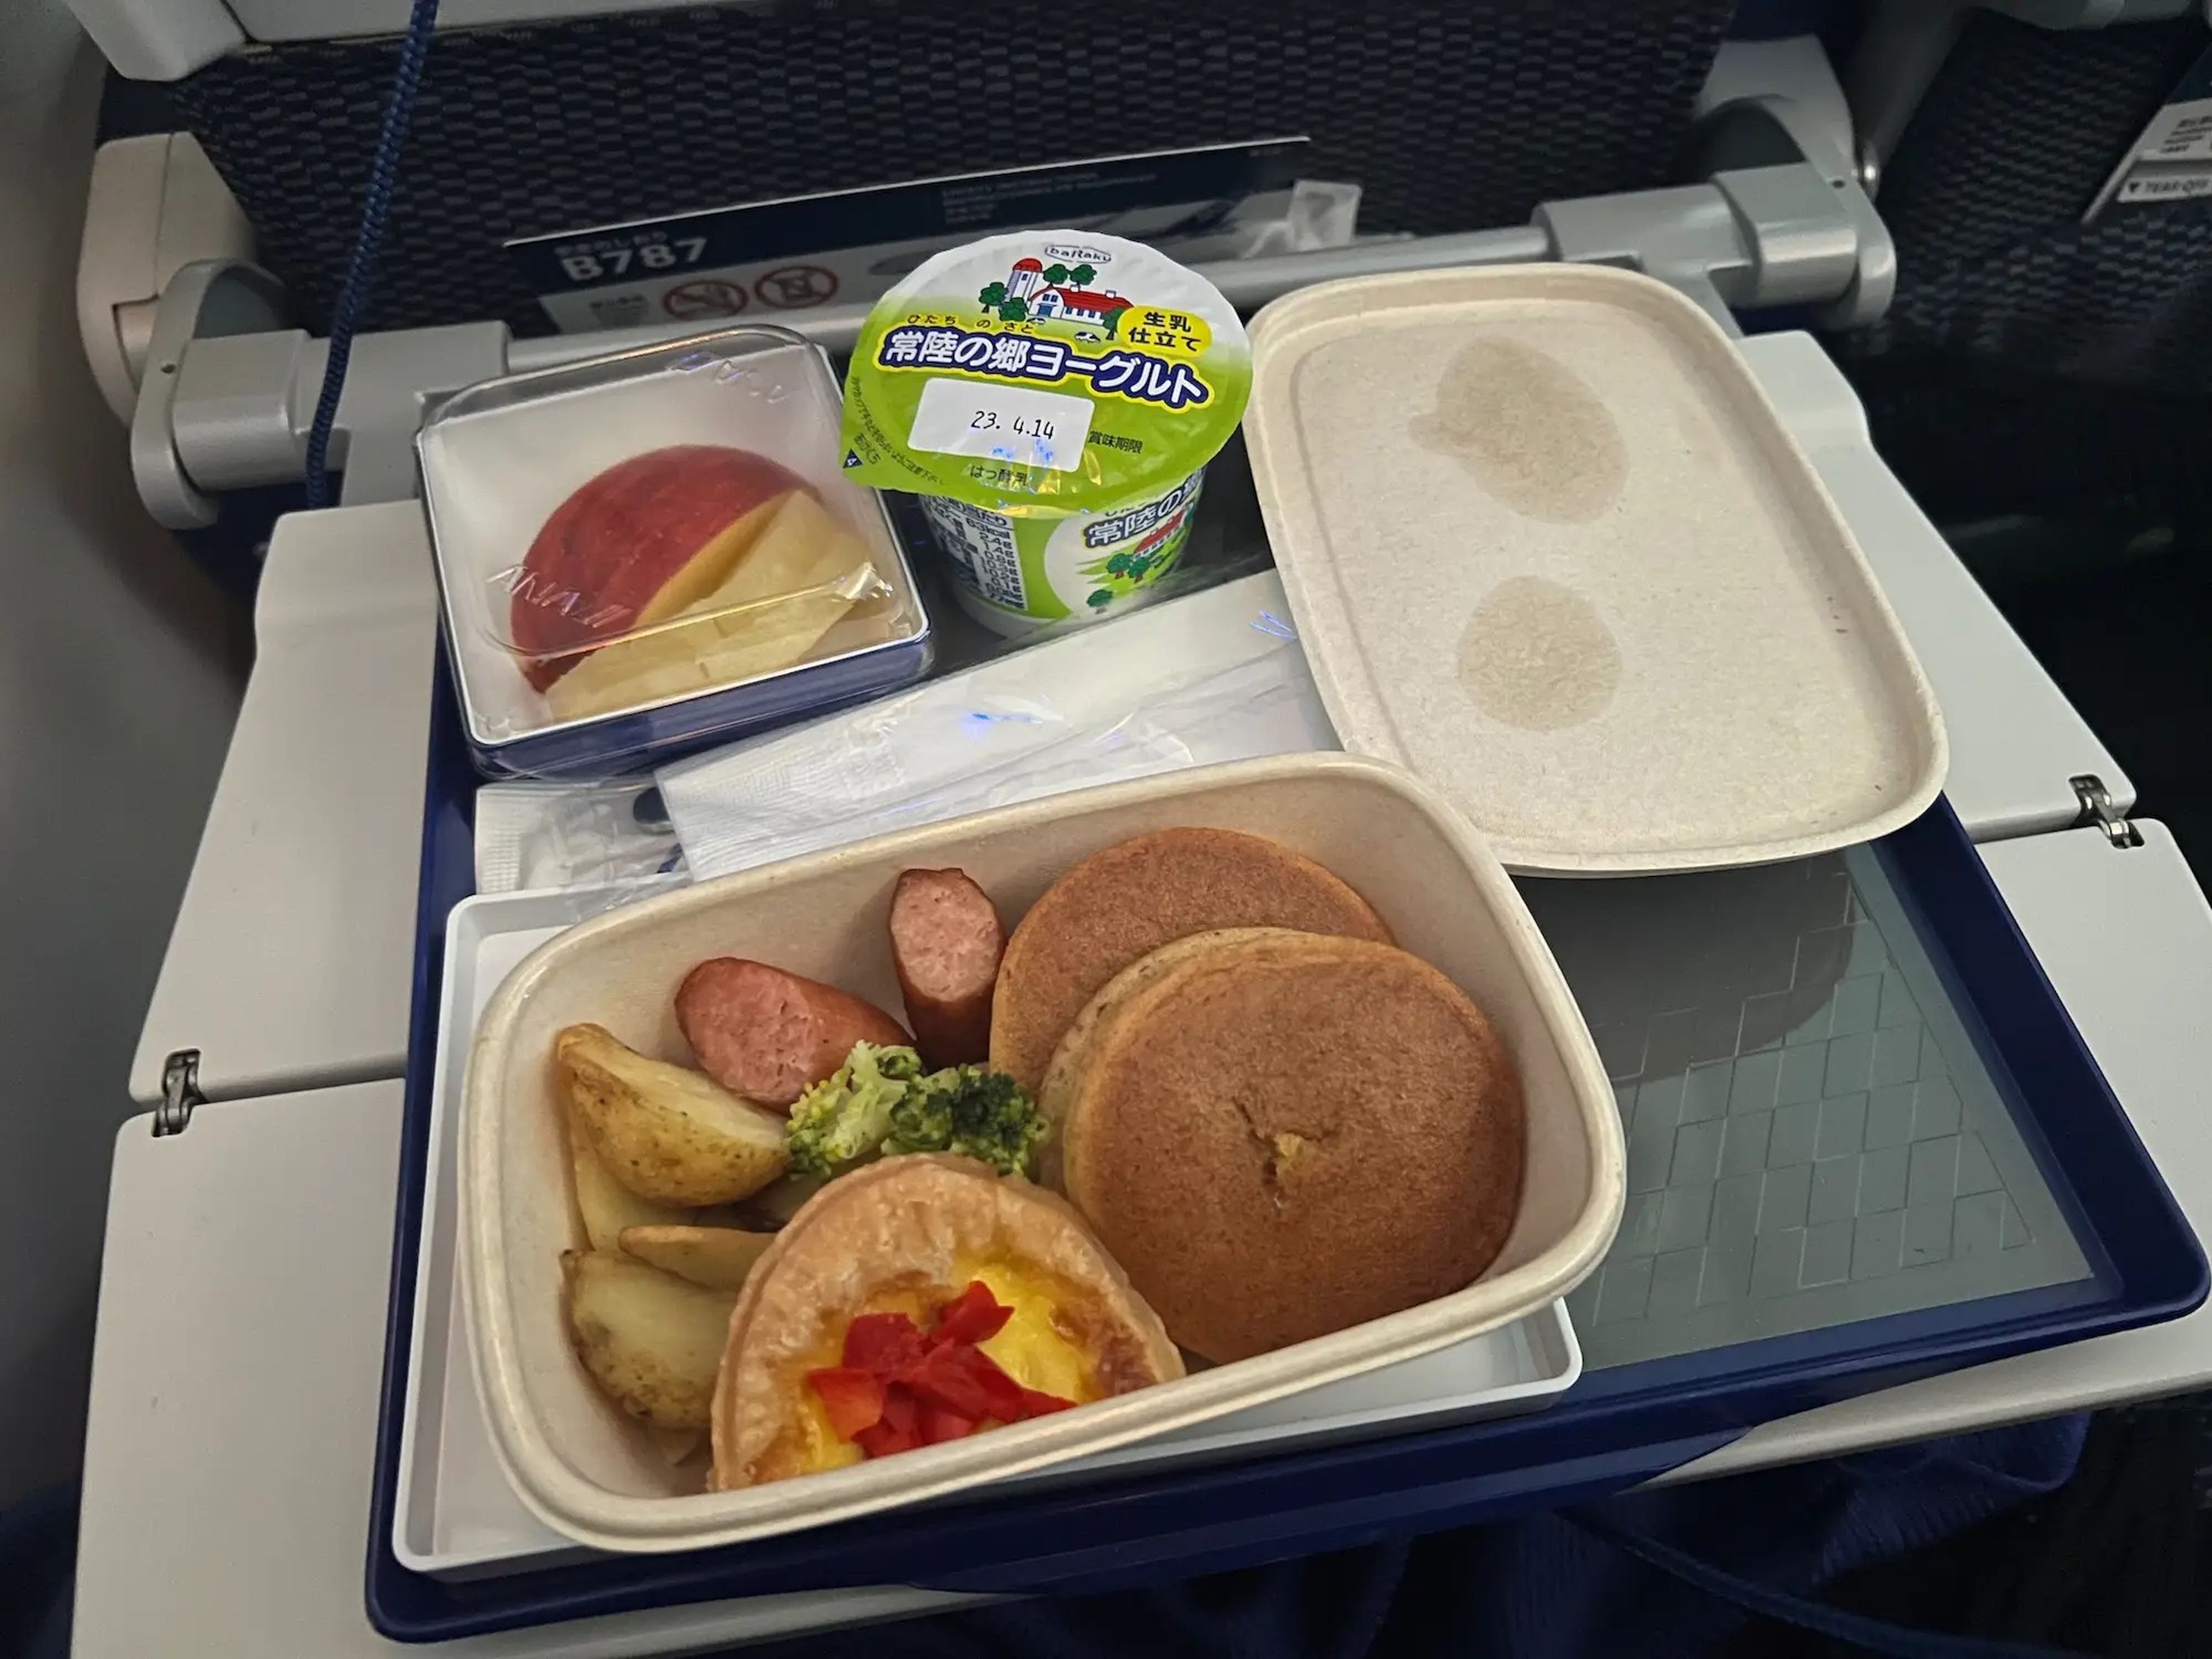 Aunque no me gustaron mucho los huevos, el desayuno de ANA fue uno de los mejores que he probado en cualquier compañía aérea.